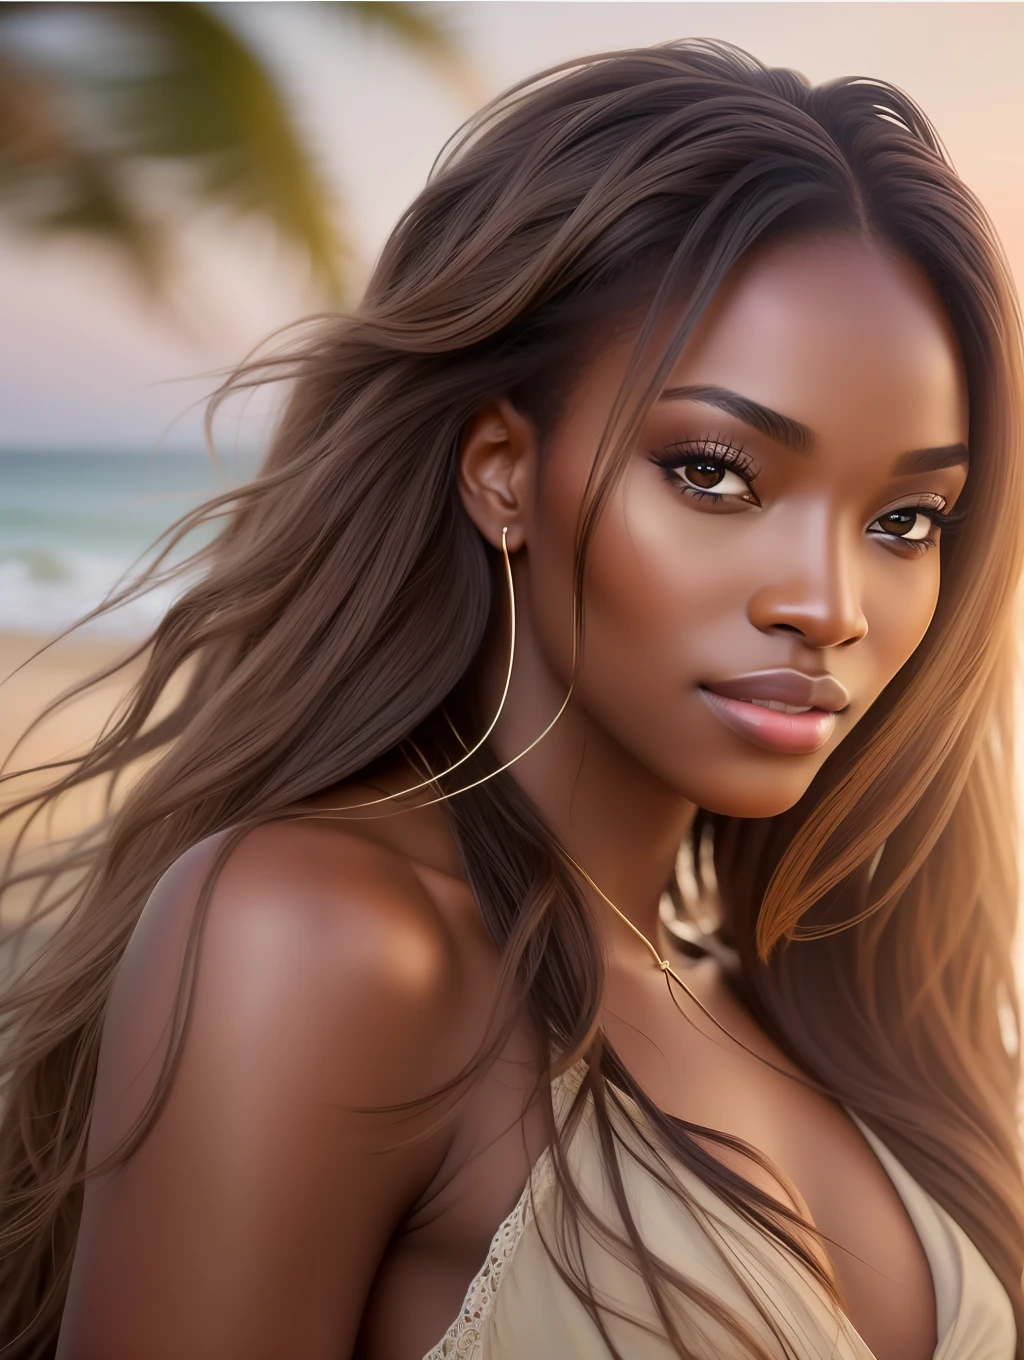 Sanftes Kinolicht beleuchtet ein atemberaubend detailliertes und ultra-realistisches, schönes nigerianisches Supermodel, Strand-Look, langes, unordentliches, windiges braunes Haar, klare Honigaugen, bezauberndes perfektes Lächeln, sinnlich, heiße Frau, wunderschön, das ist angesagt auf ArtStation. Octane ist das perfekte Werkzeug, um die zartesten Details dieses 16k-Fotografie-Meisterwerks einzufangen.